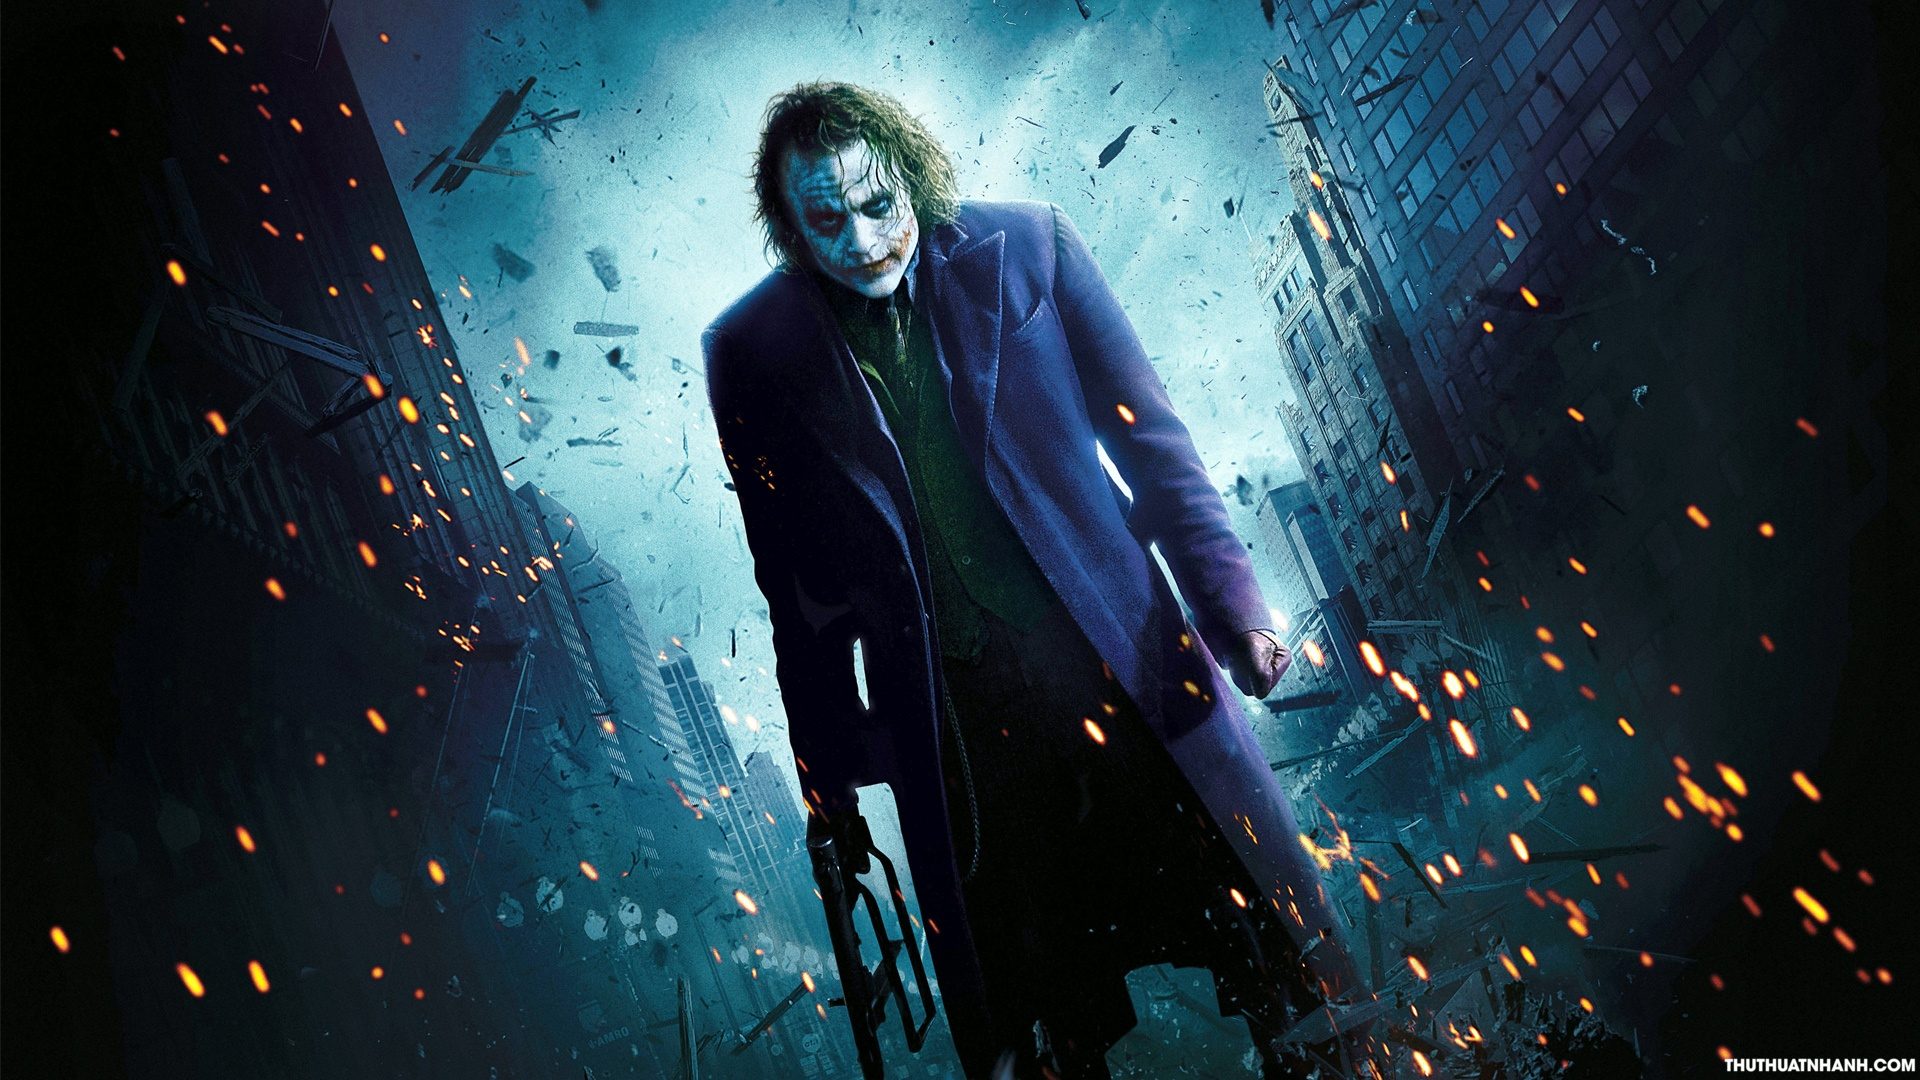 Hình nền Joker ngầu chất lượng Full HD.